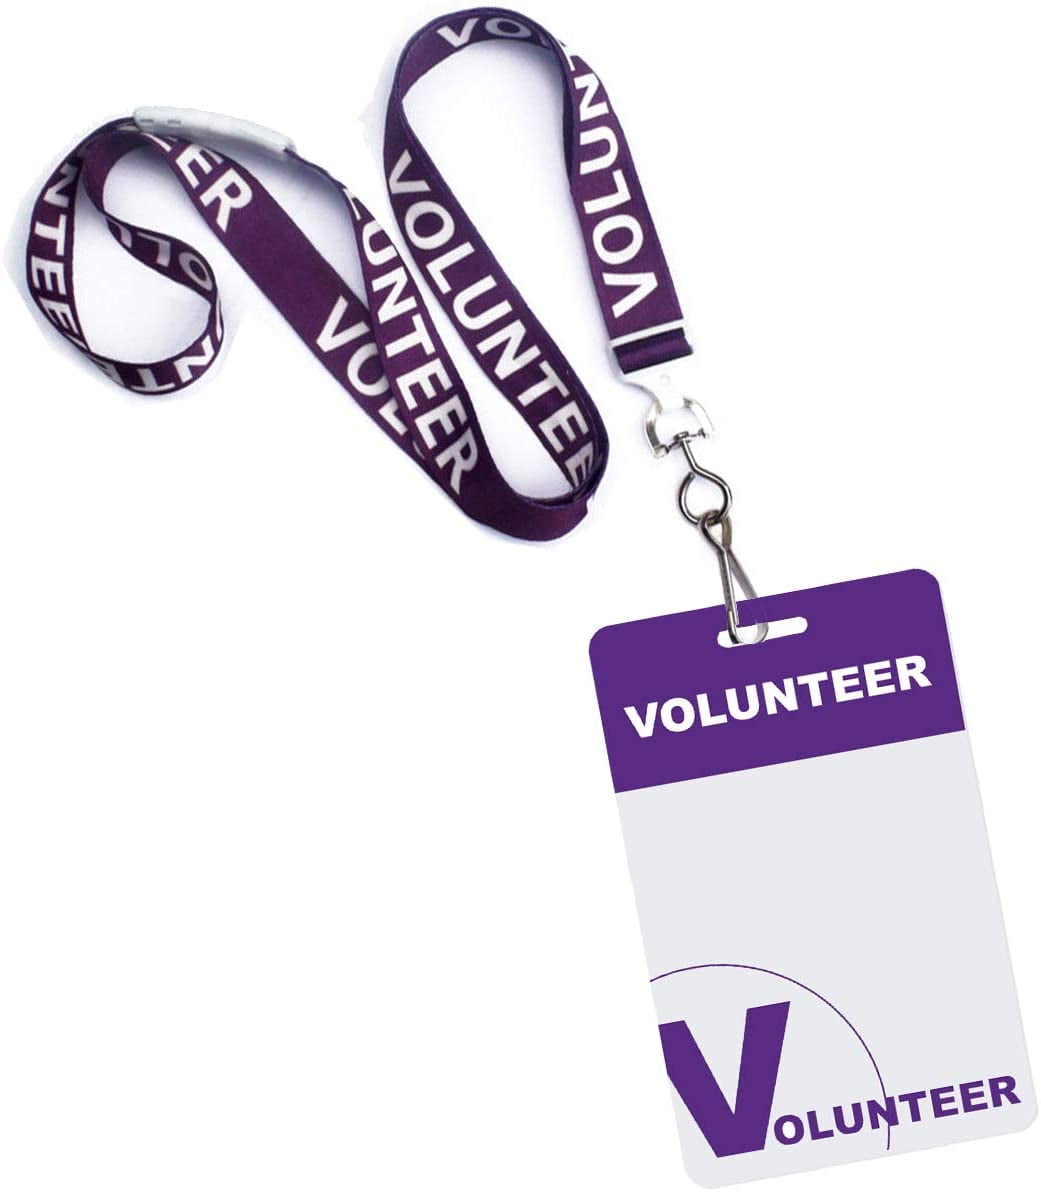 Logo Staff Personalised Name Badges Salon Hairdresser Tour Events Volunteer